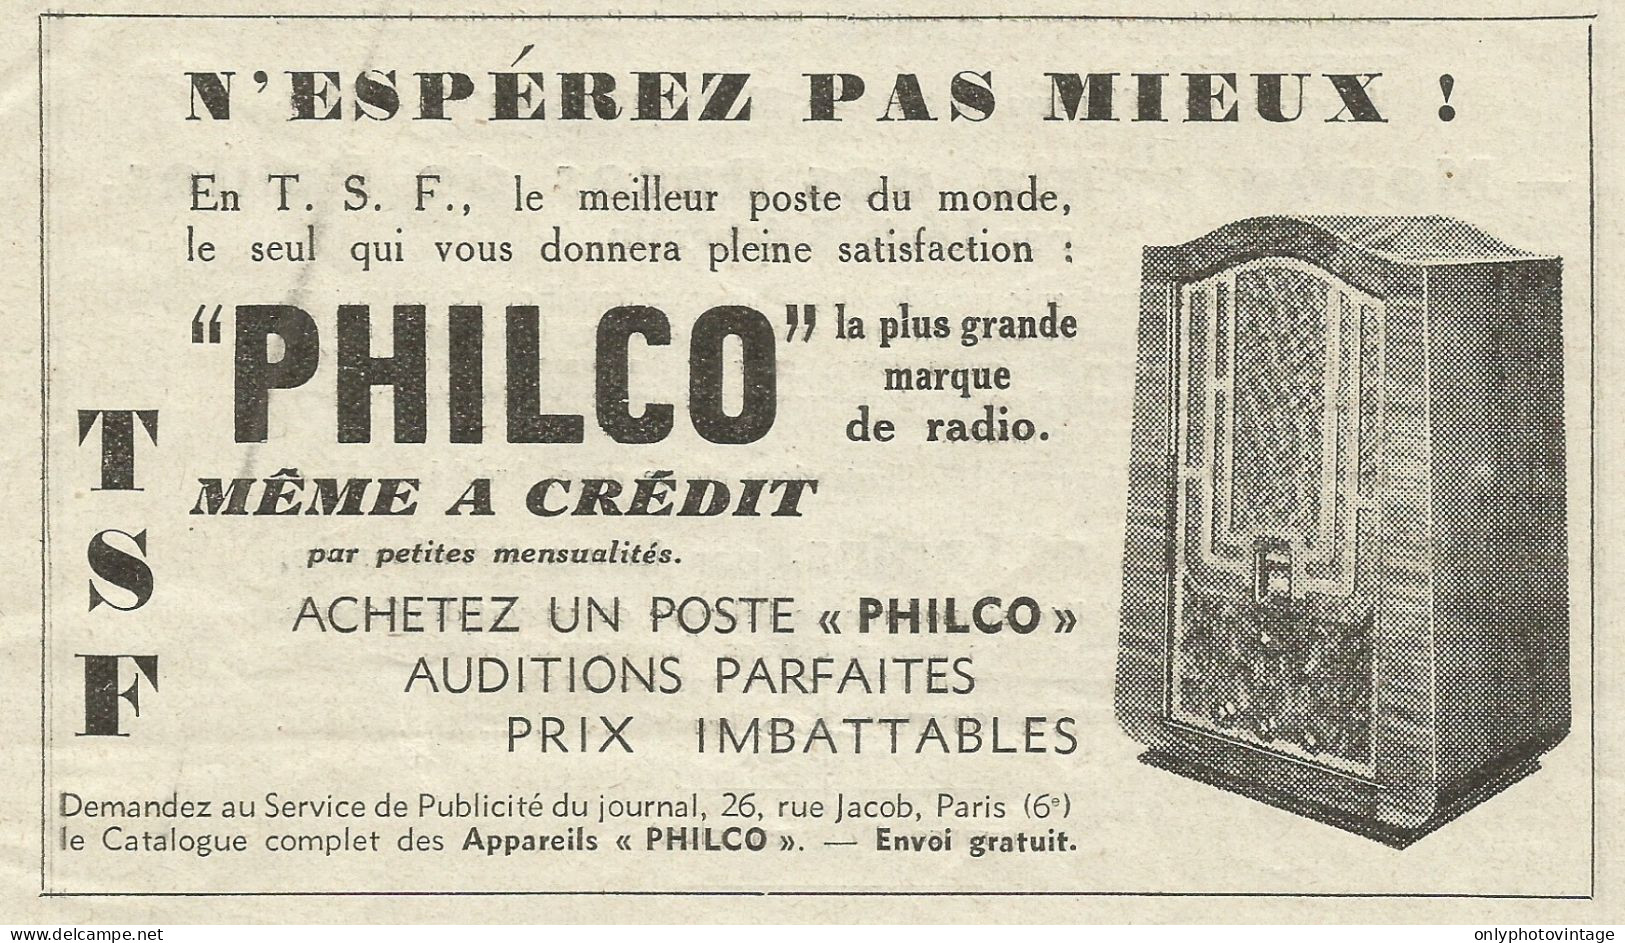 Radio PHILCO - Pubblicità 1934 - Advertising - Advertising